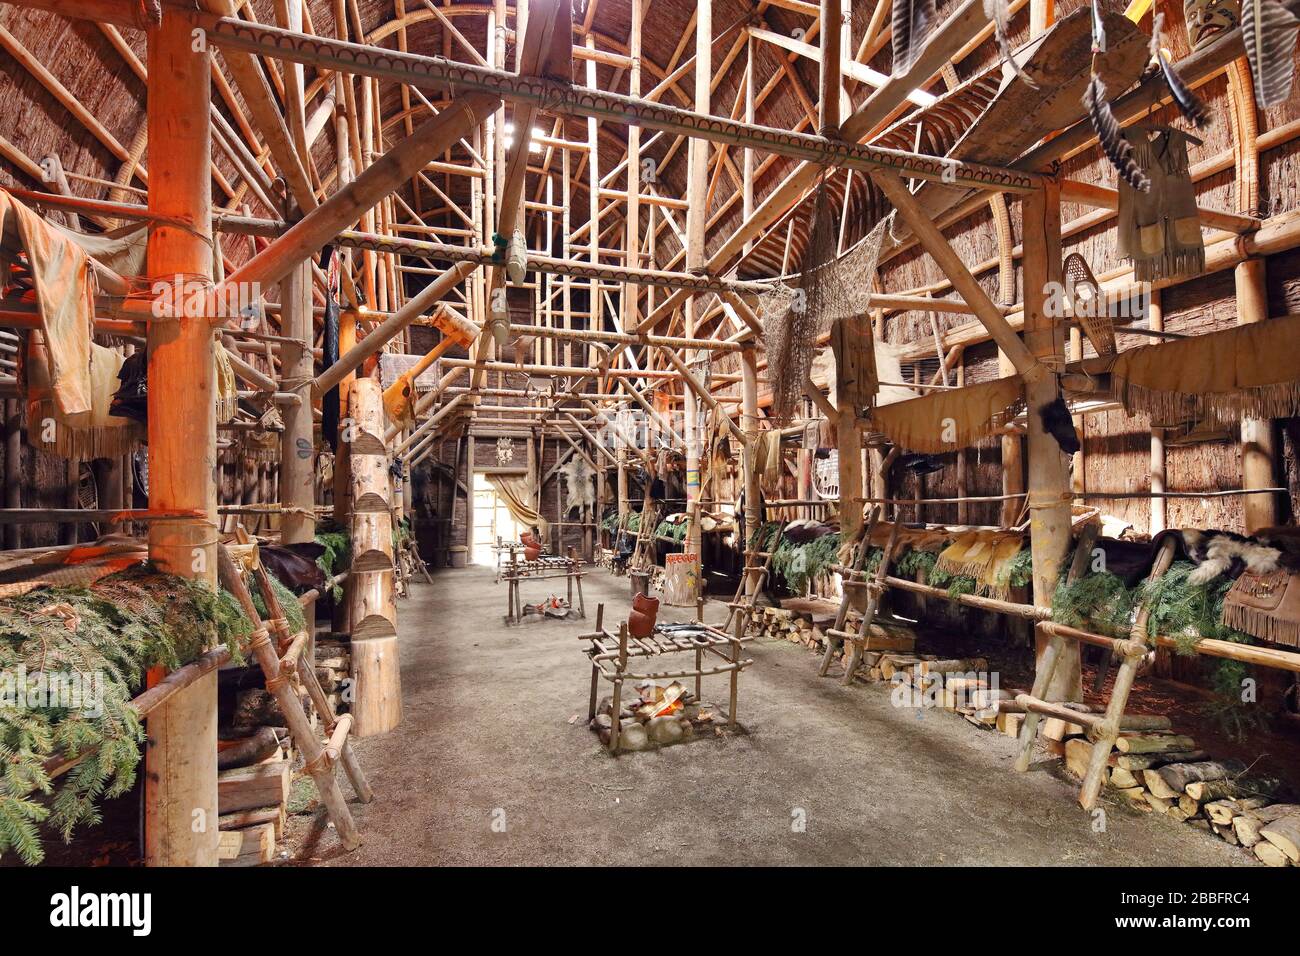 Rekonstruiertes Interieur der Ekionkiestha Longhouse auf der Huron-Wendat Nation Reservation, die sich in der traditionellen Huronsite Onhoua Chetek8e, Wendake, Quebec City, Provinz Quebec, Kanada befindet Stockfoto